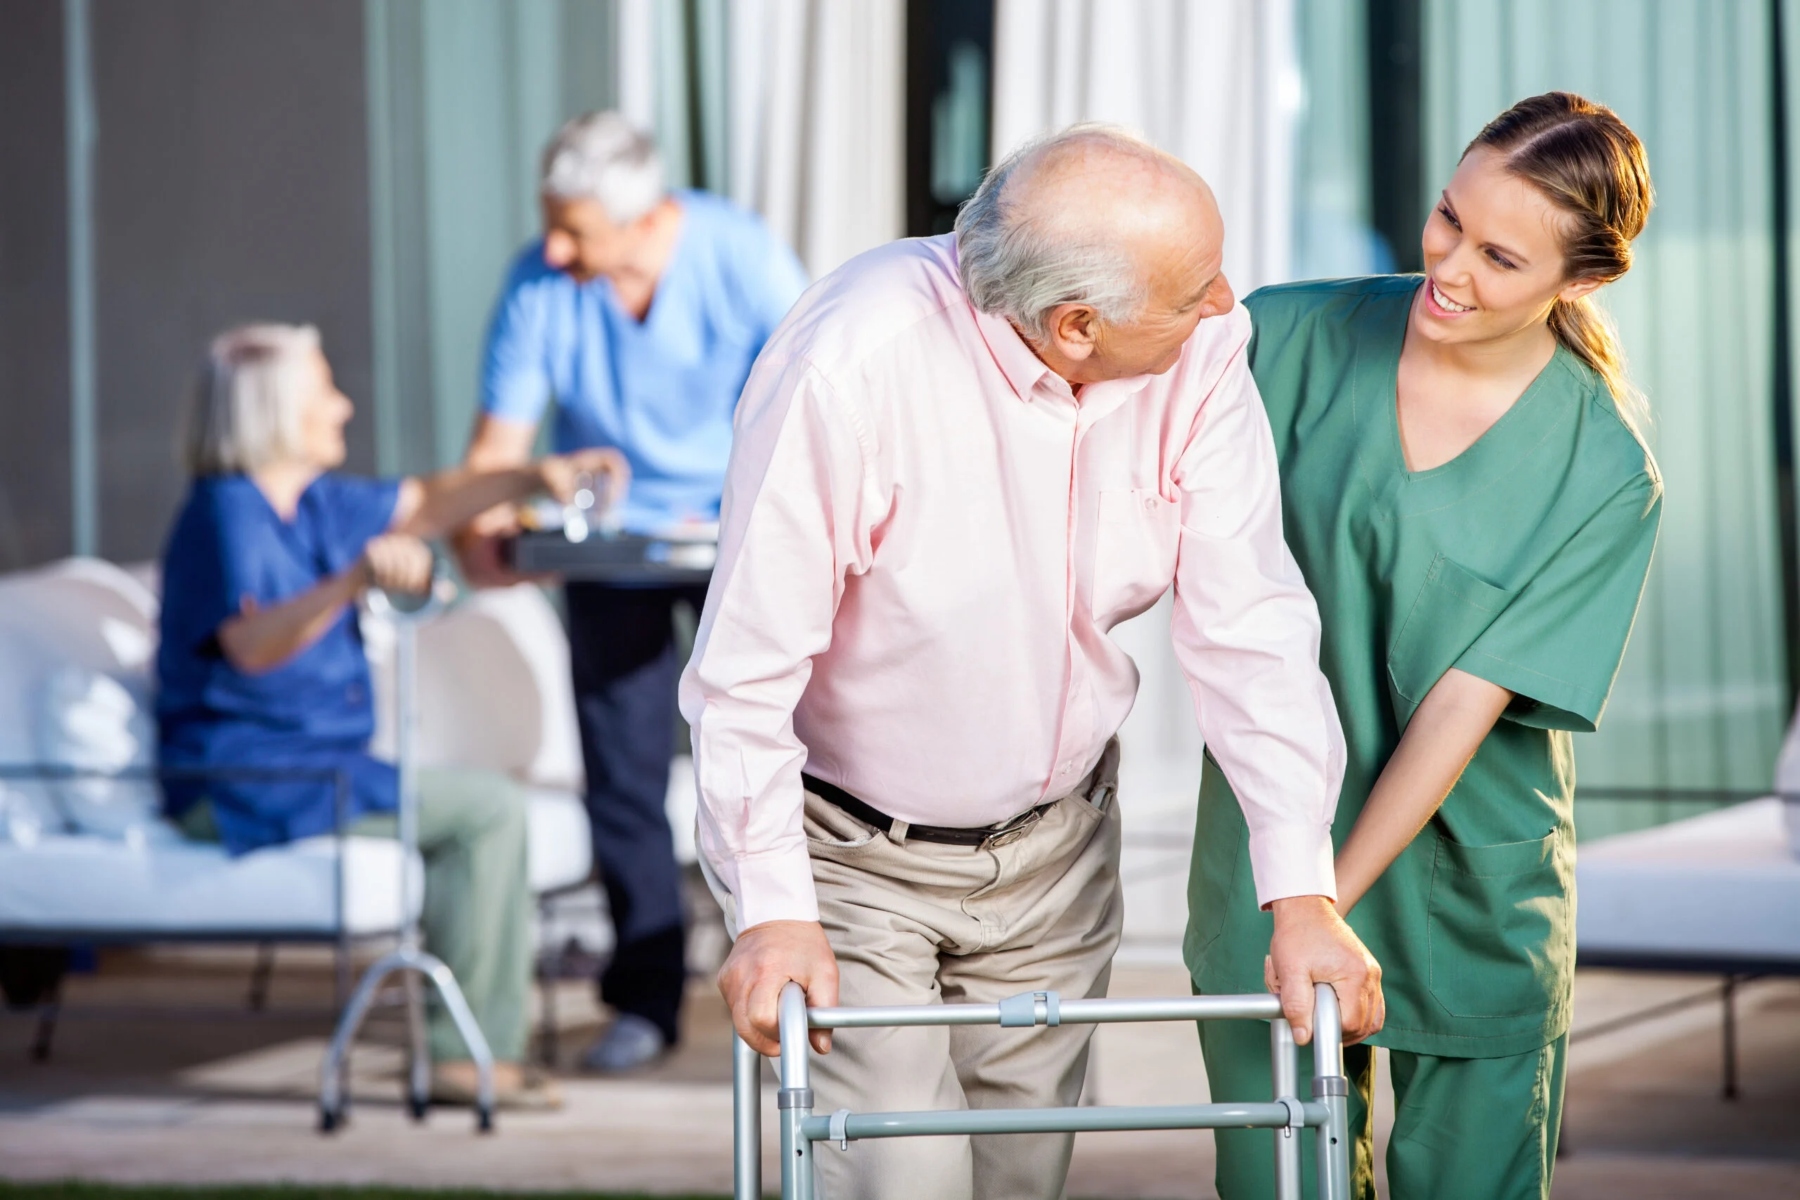 ΗΠΑ γηροκομεία: Τα γηροκομεία των ΗΠΑ δεν αναφέρουν πολλές σοβαρές πτώσεις